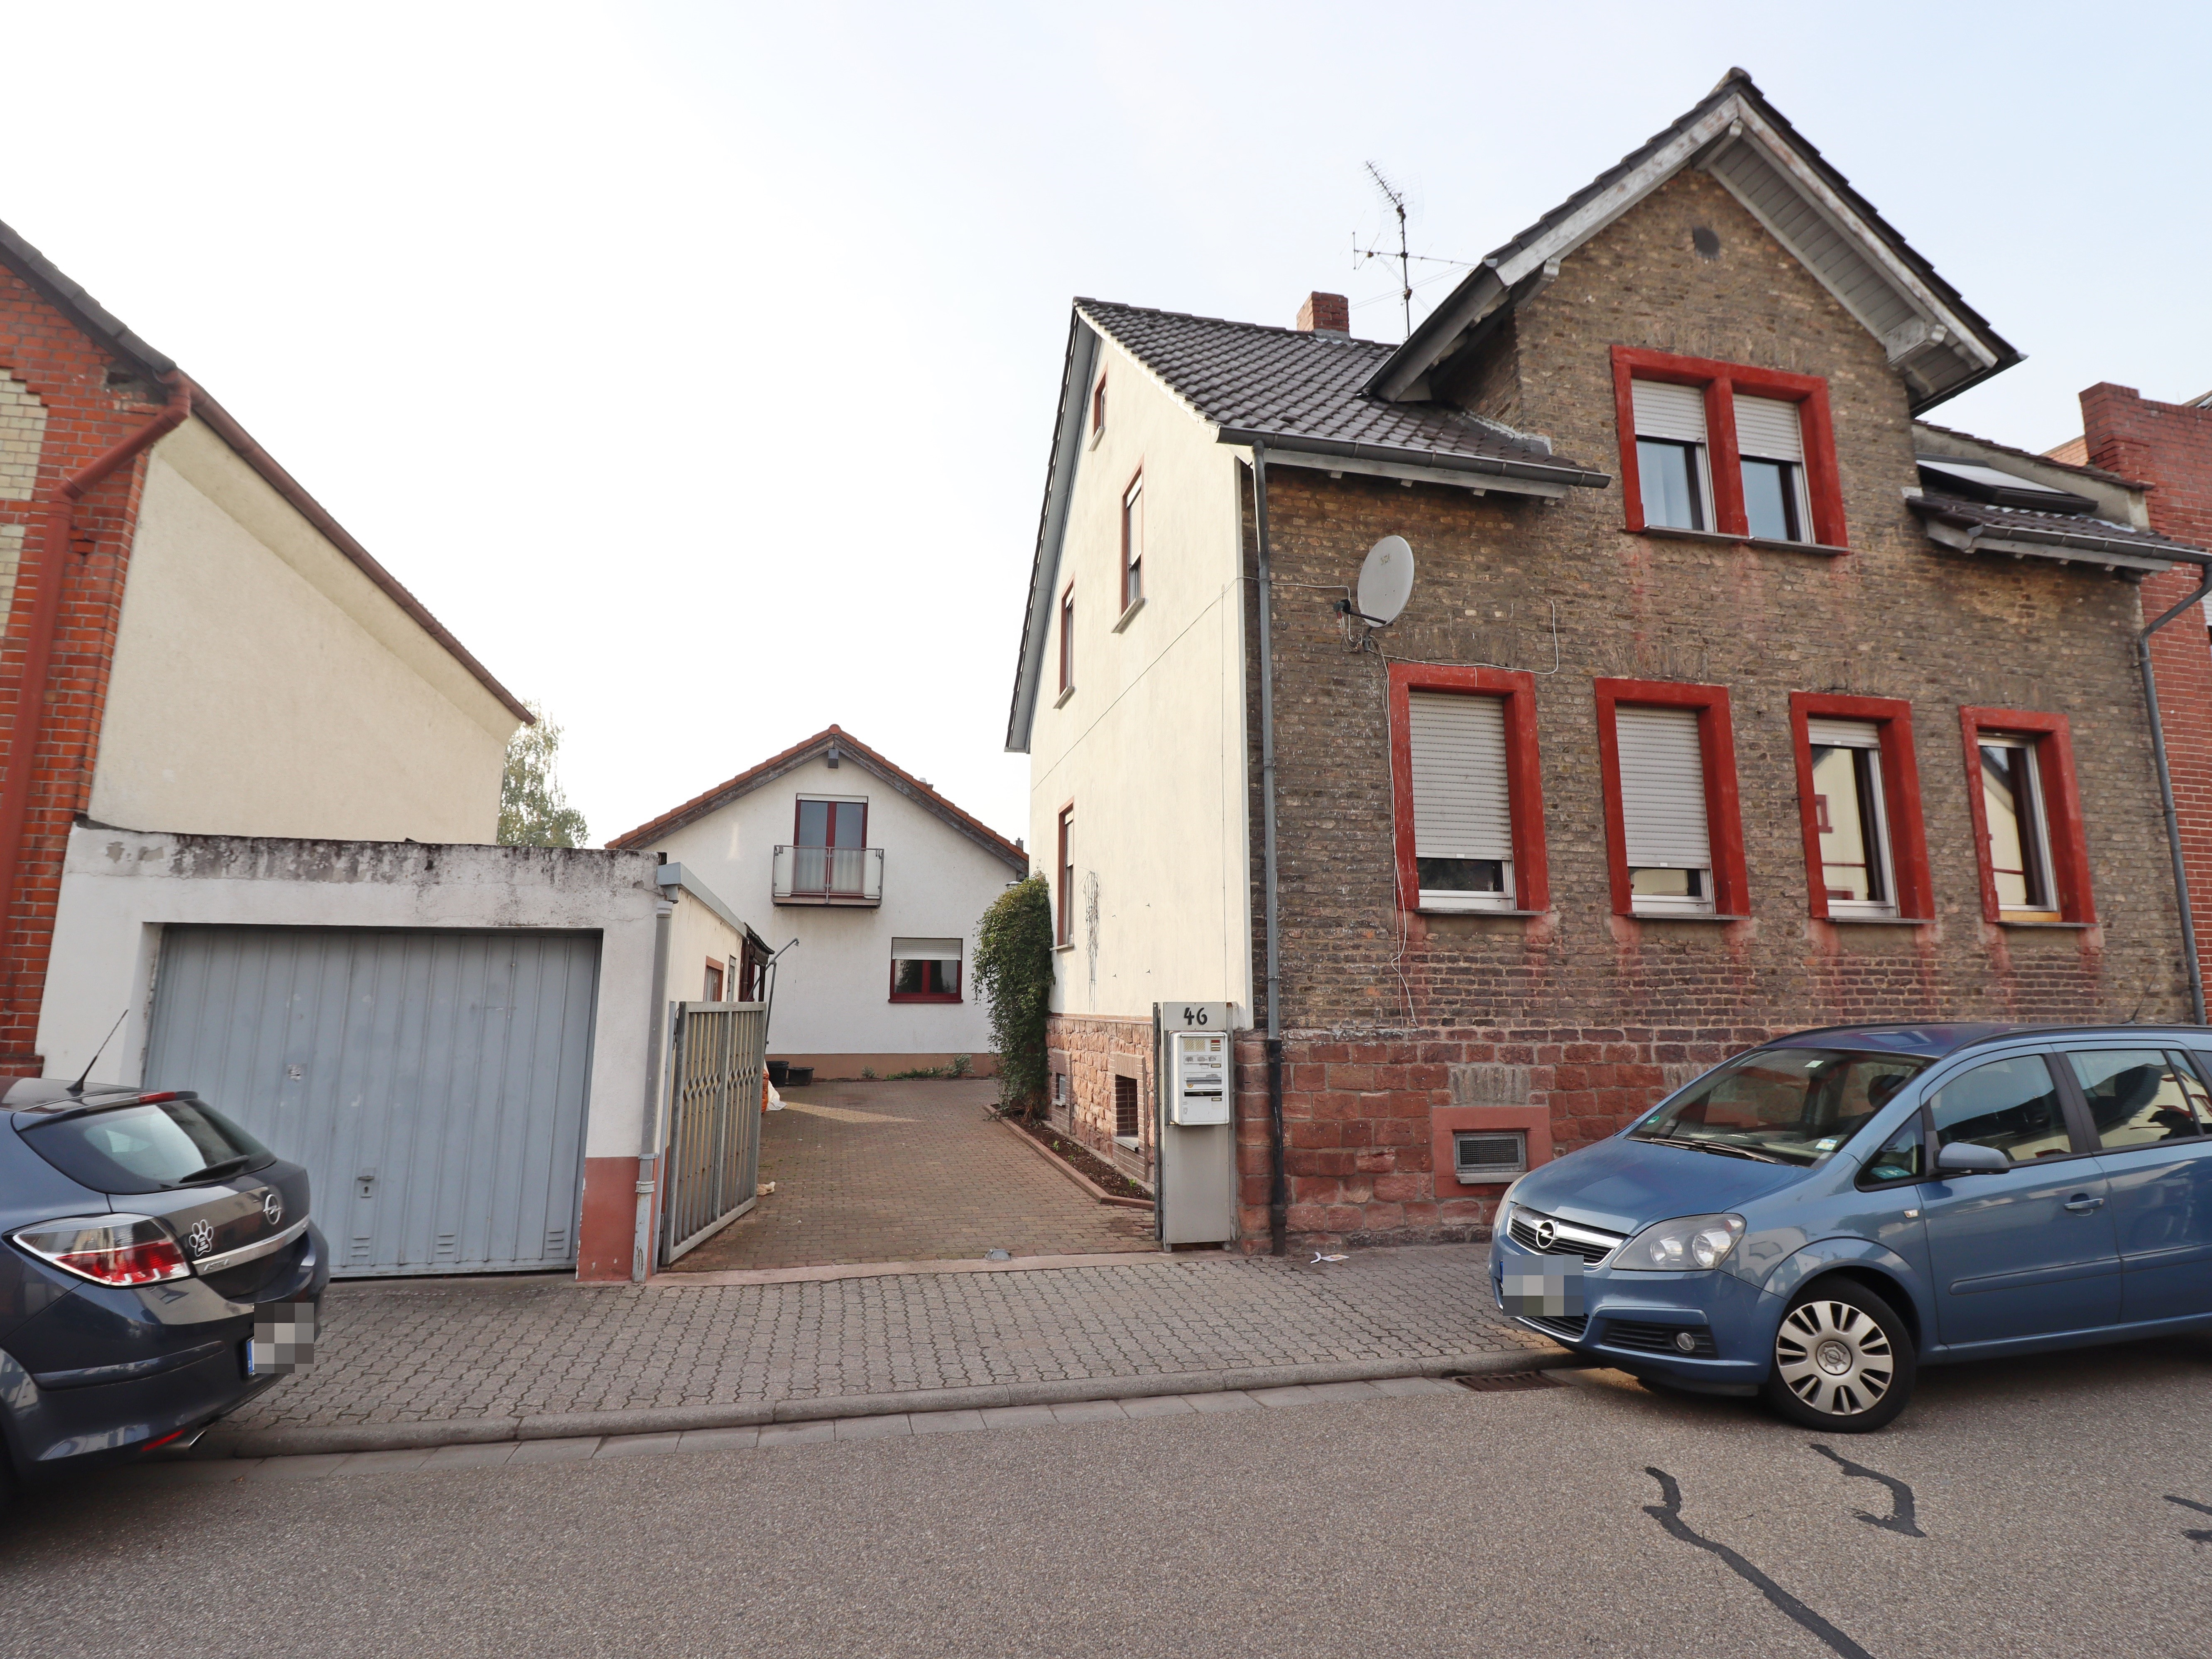 Objekt 1062: Zwei Häuser im Ortskern von Gernsheim